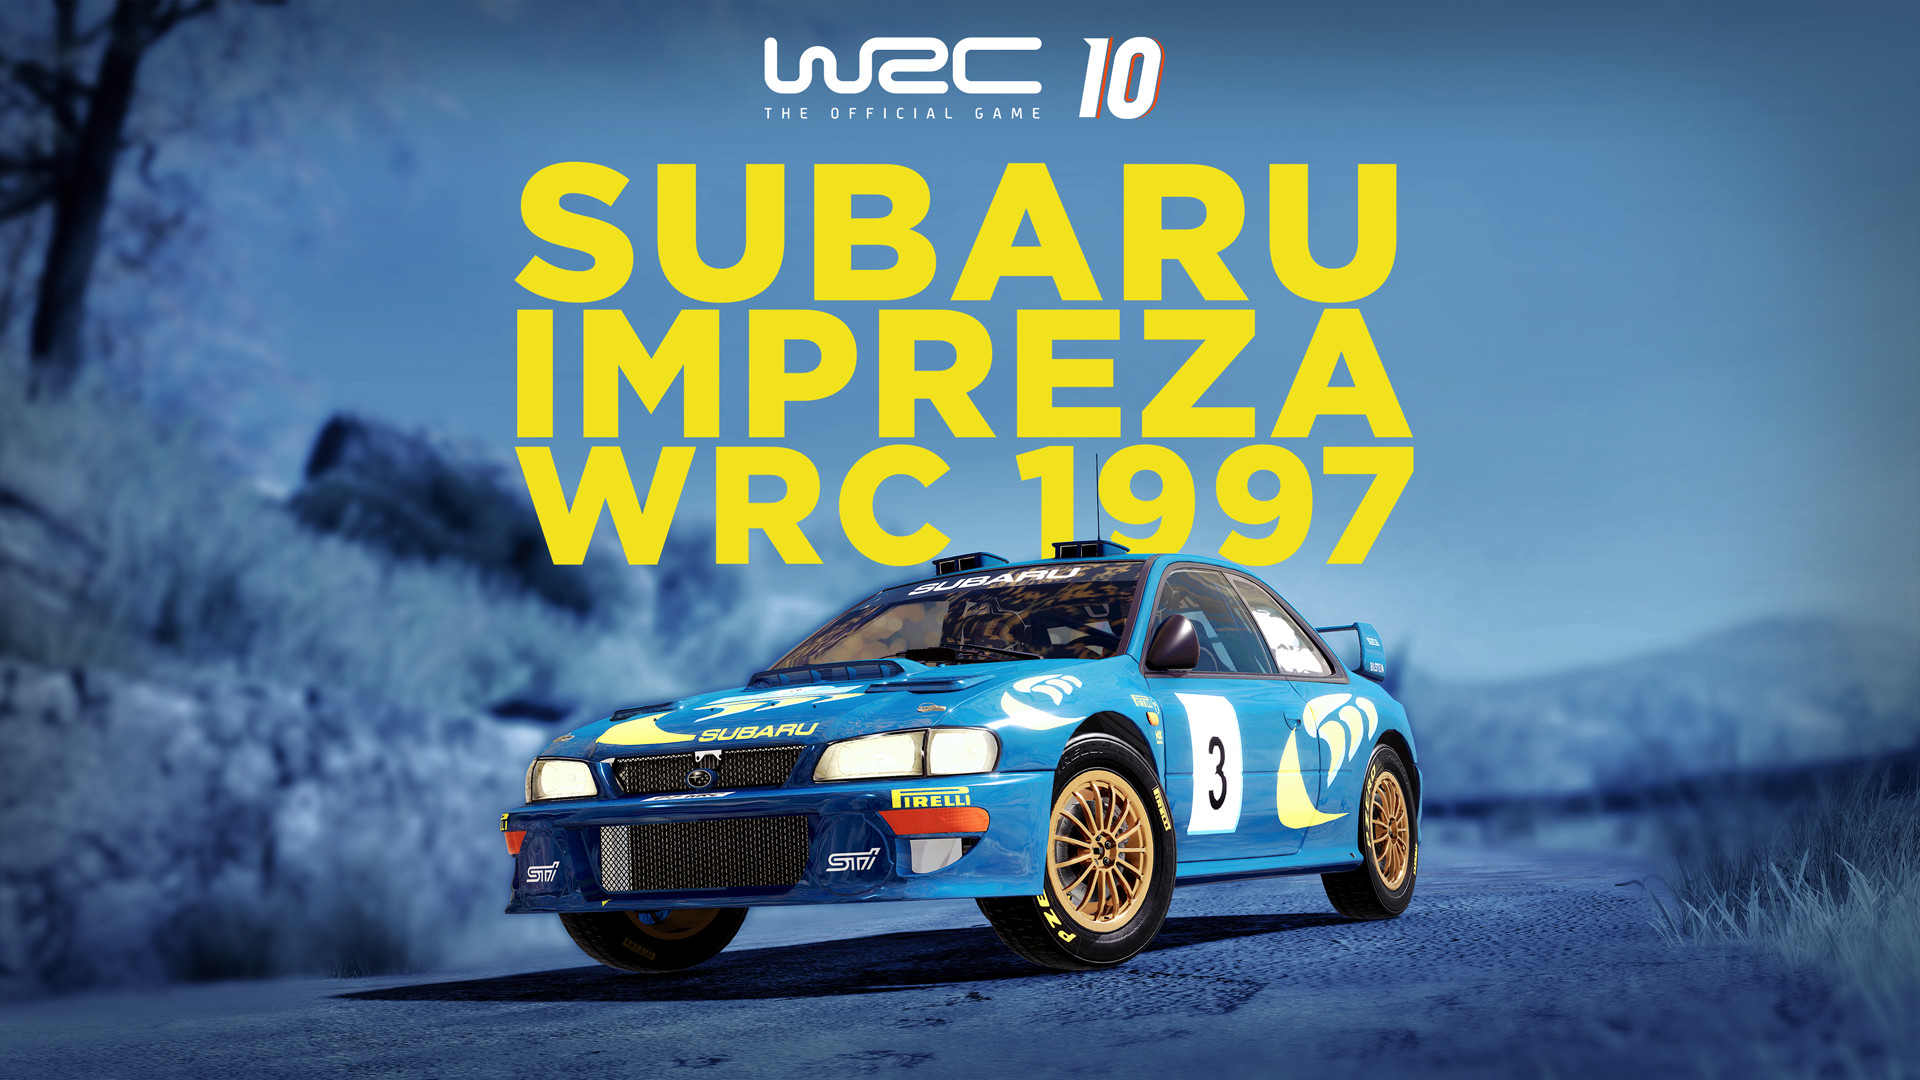 WRC 10 - Subaru Impreza WRC 1997 DLC Steam CD Key [$ 3.33]